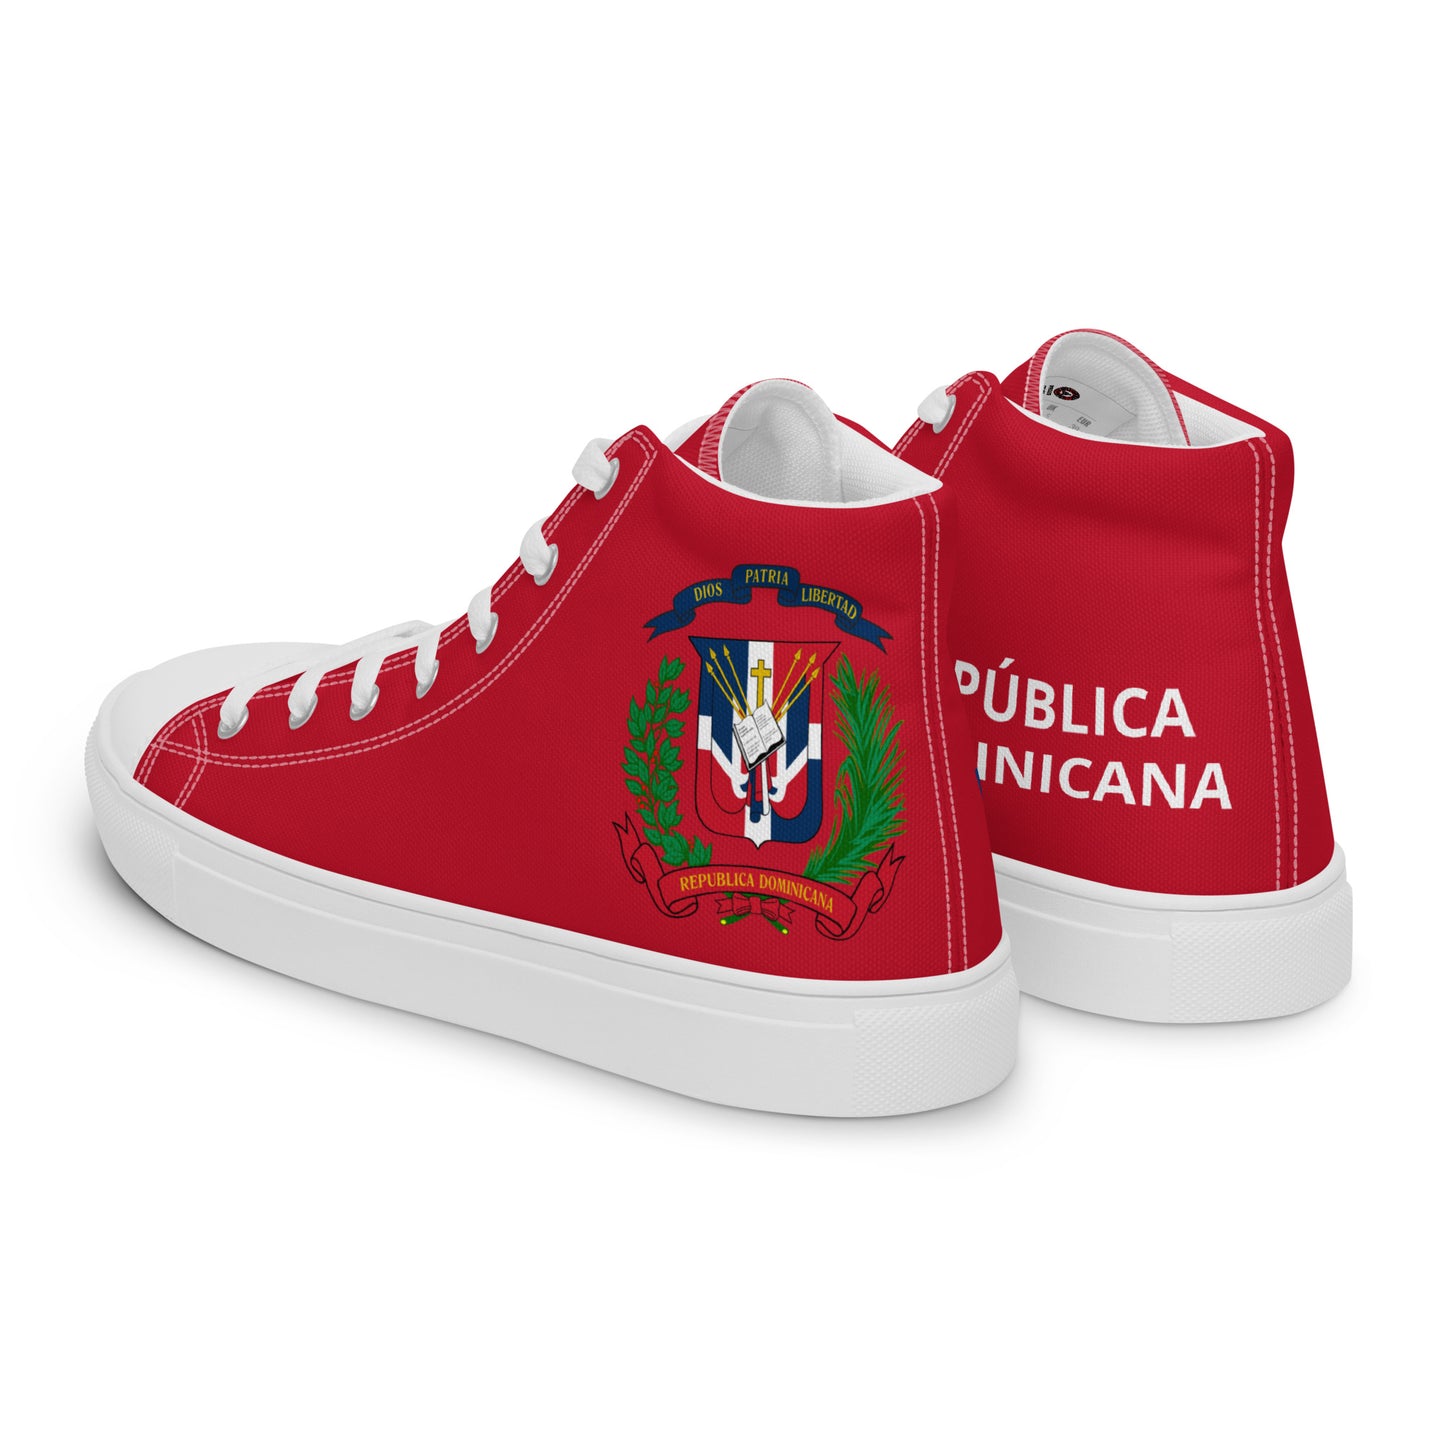 República Dominicana - Men - Red - High top shoes